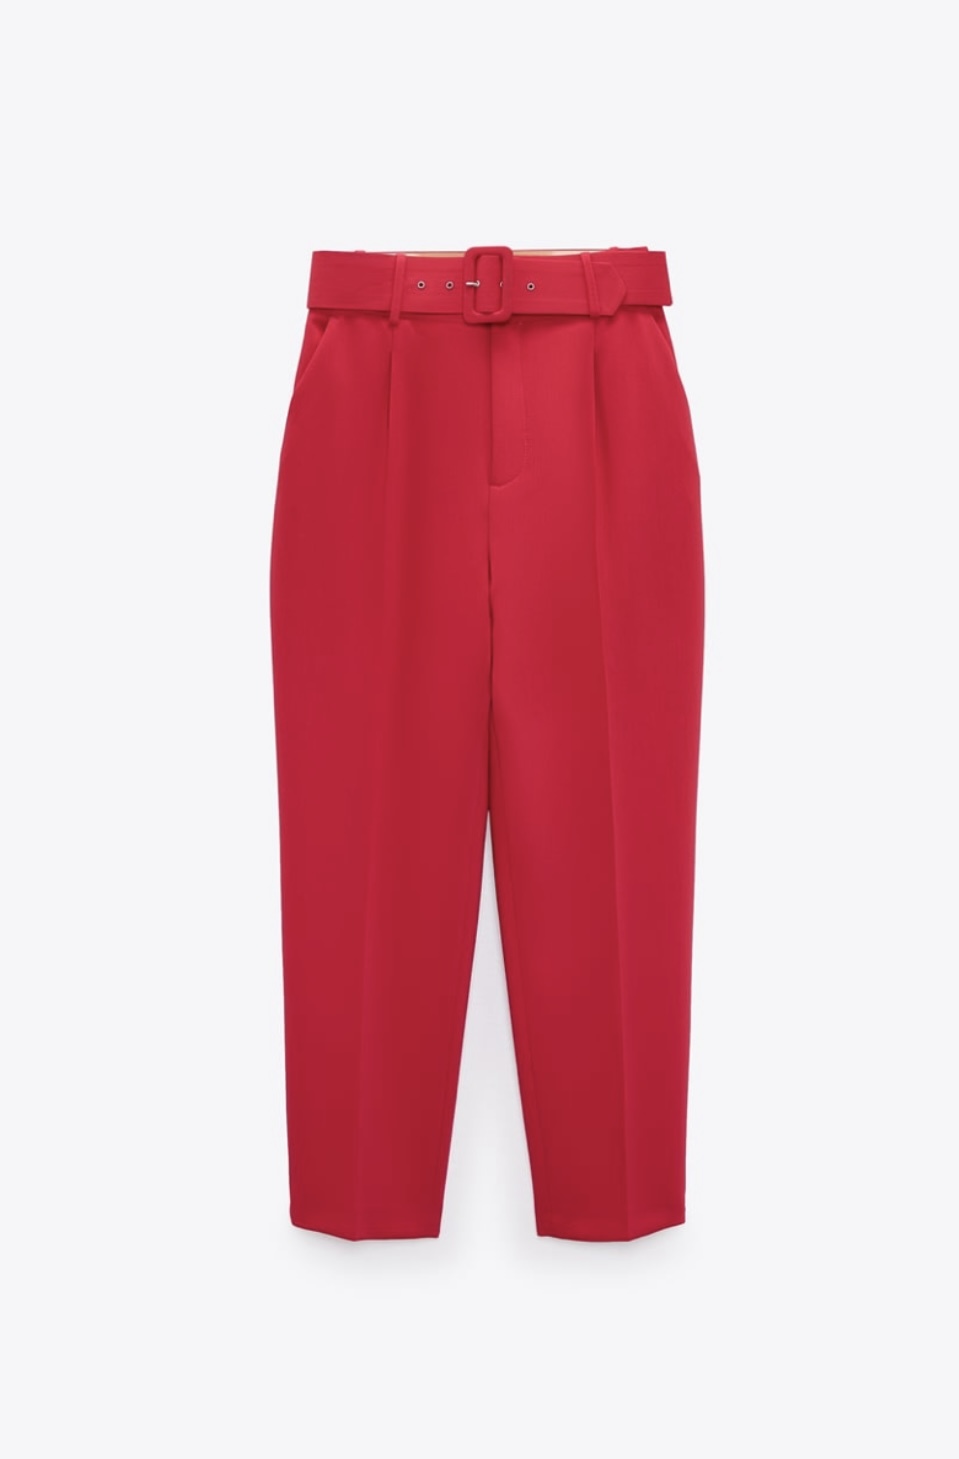 Pantalones con cinturón de Zara